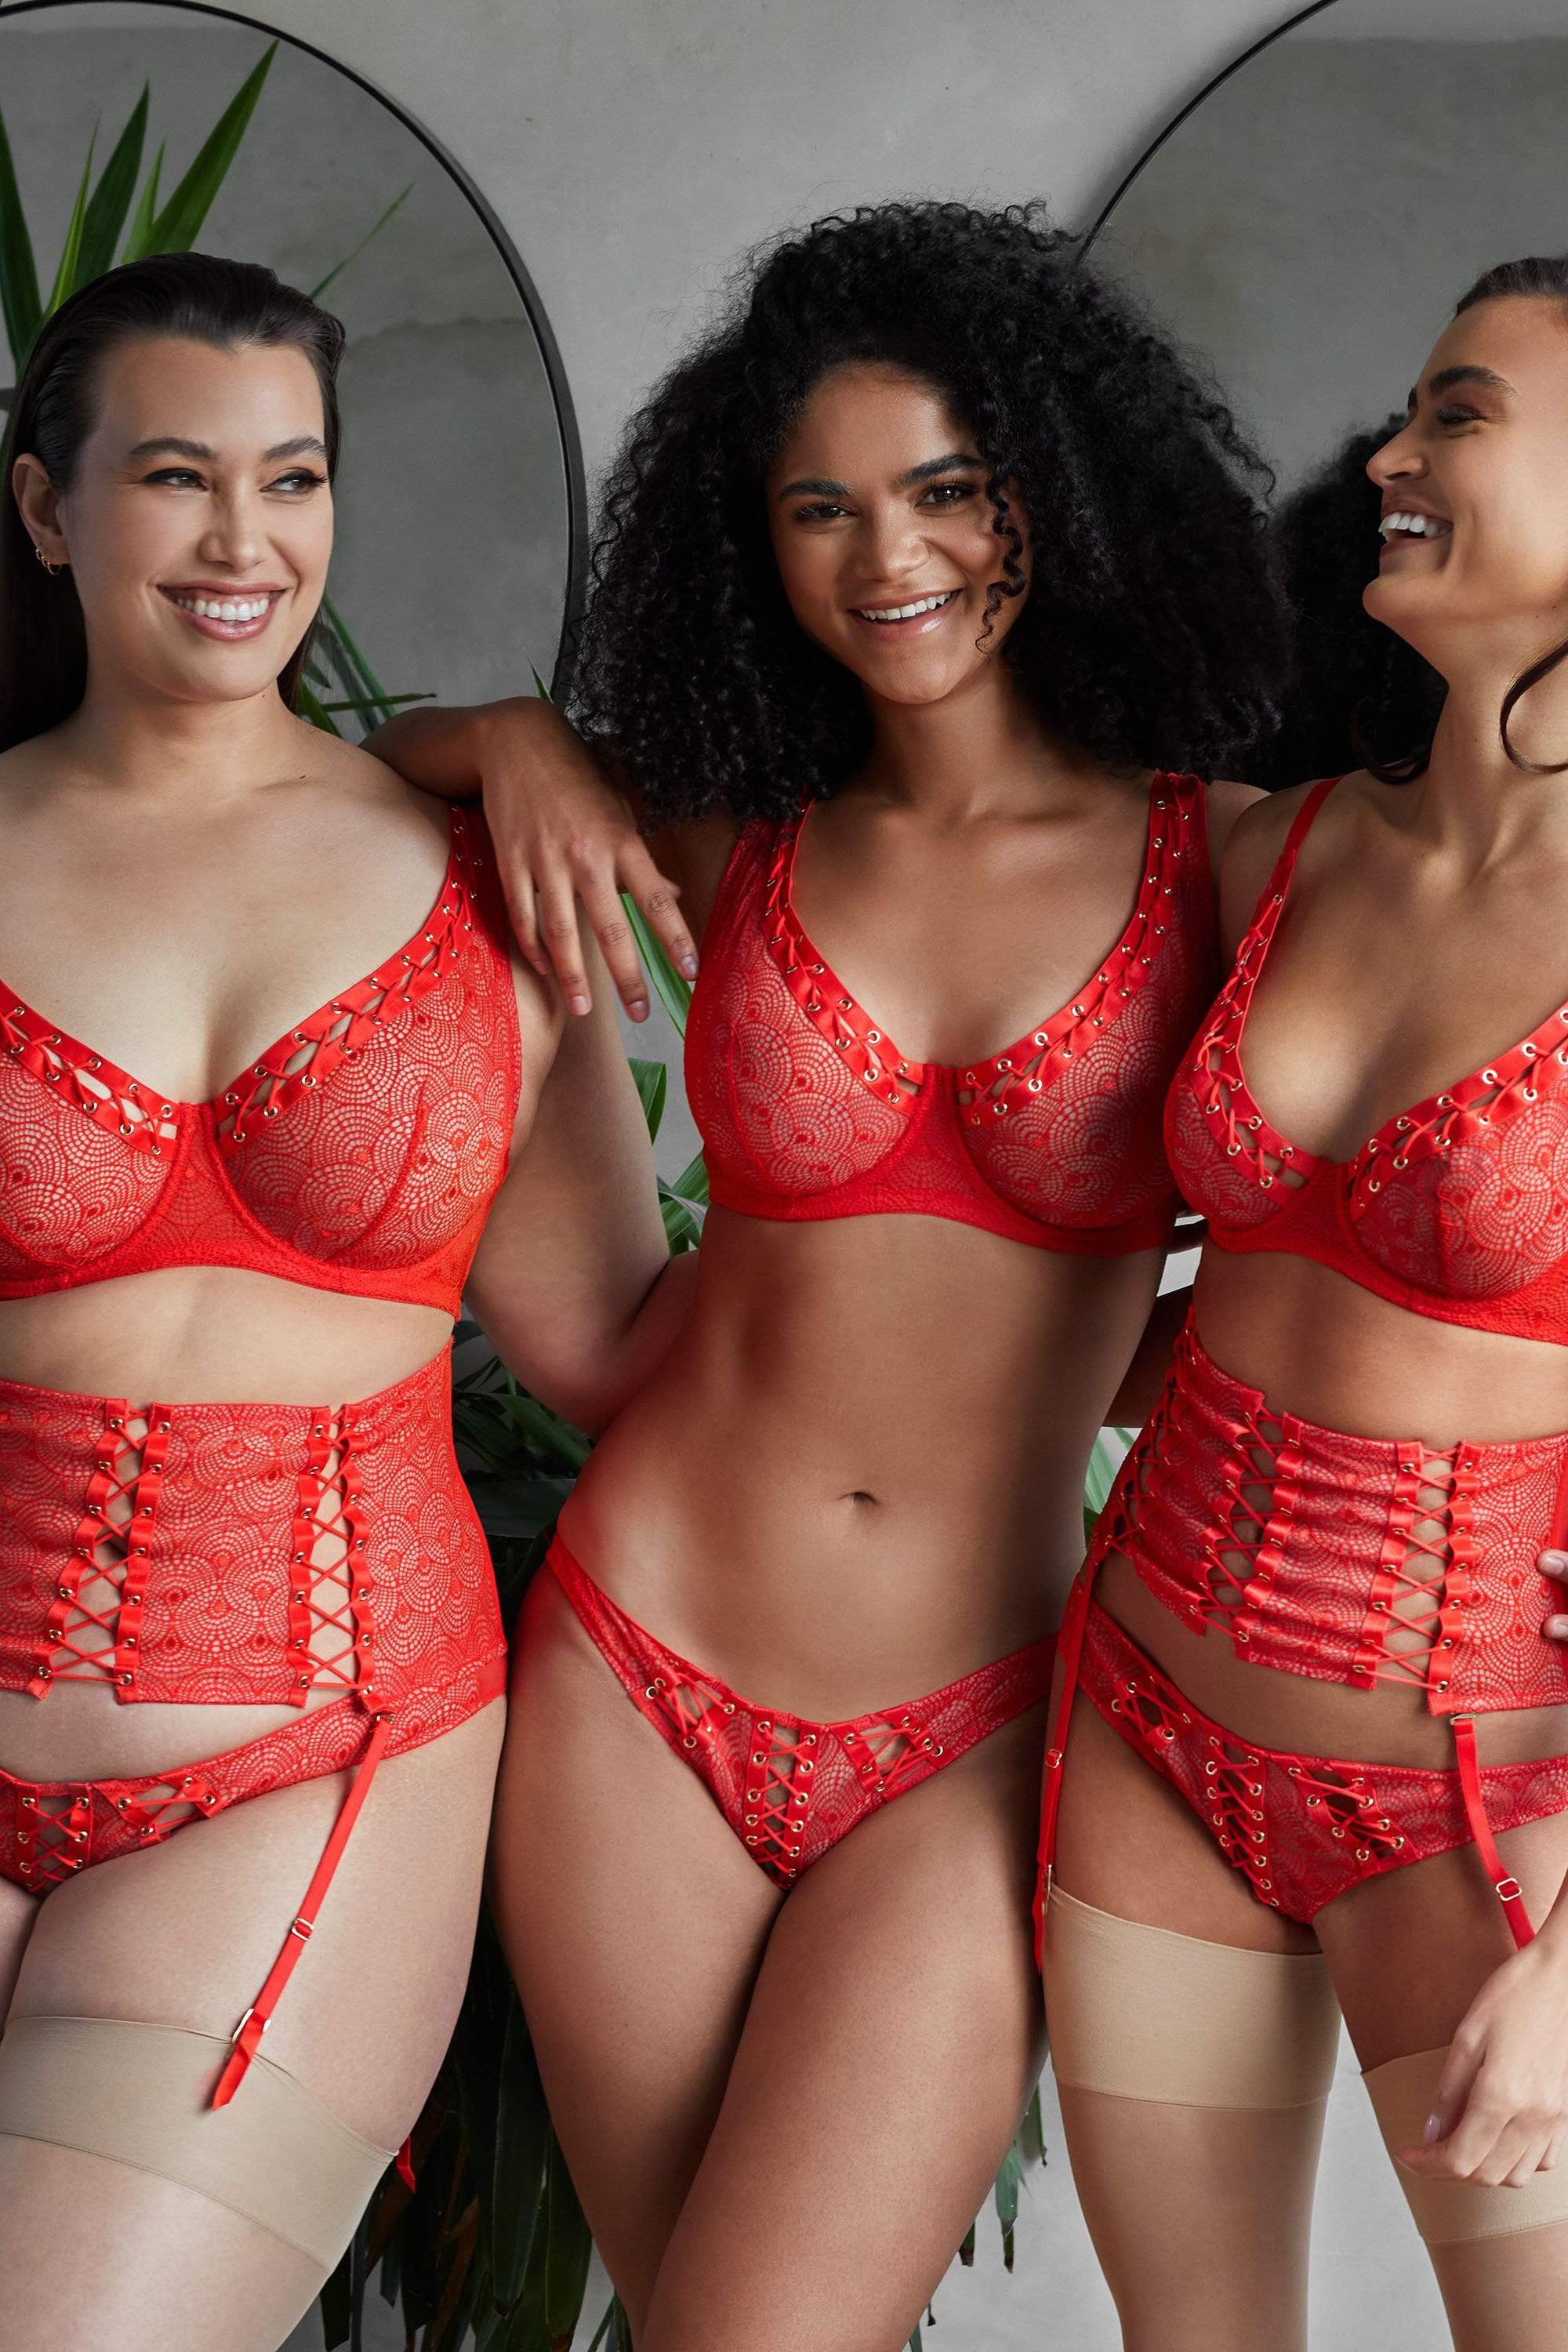 Honey Birdette on X: 'Tis the season for flawless lingerie